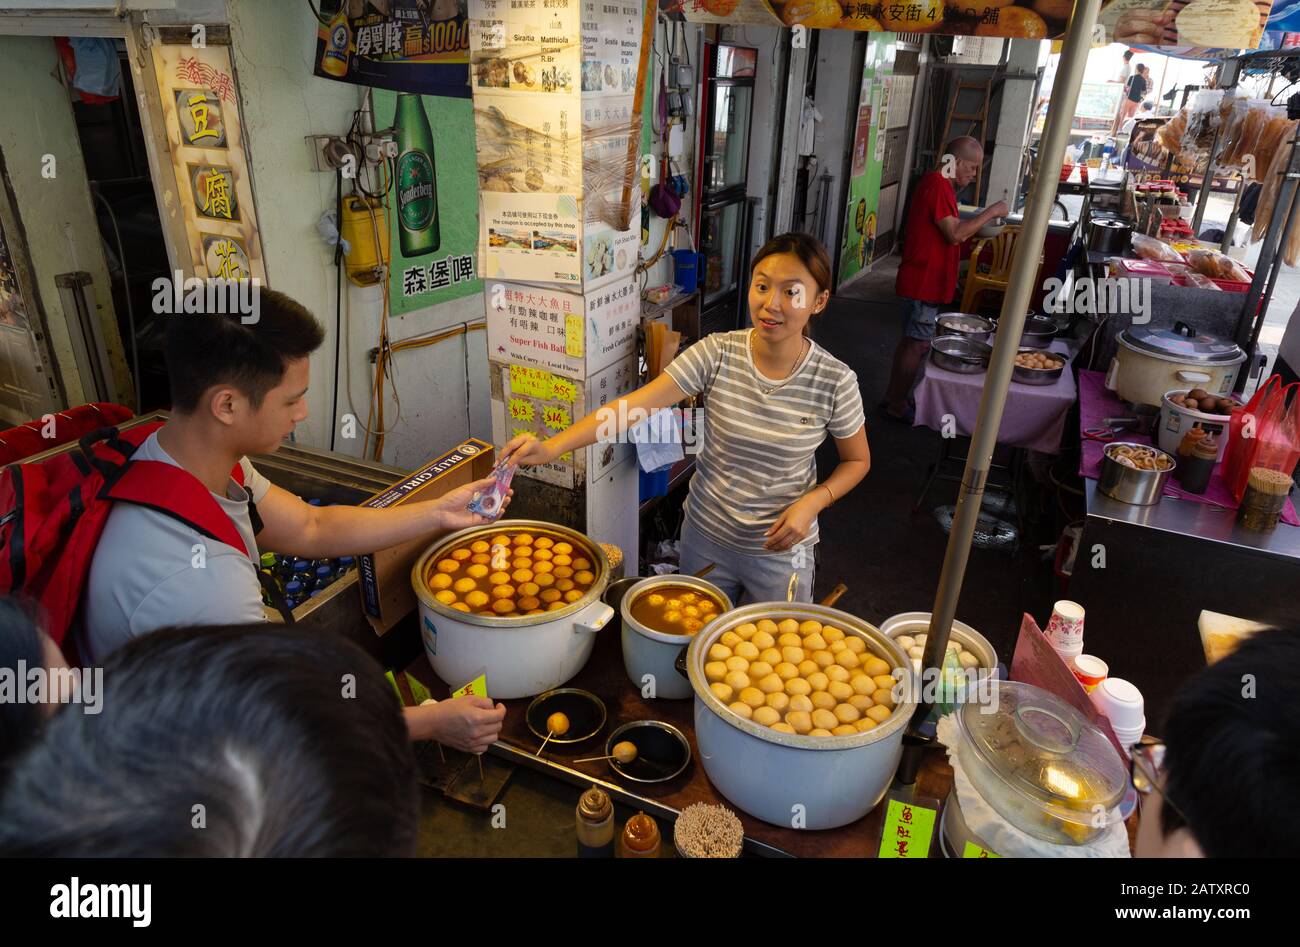 Les gens qui achètent de la nourriture dans une rue de l'étalage; le marché de Tai O, le village de pêche de Tai O, l'île de Lantau, Hong Kong Asie Banque D'Images